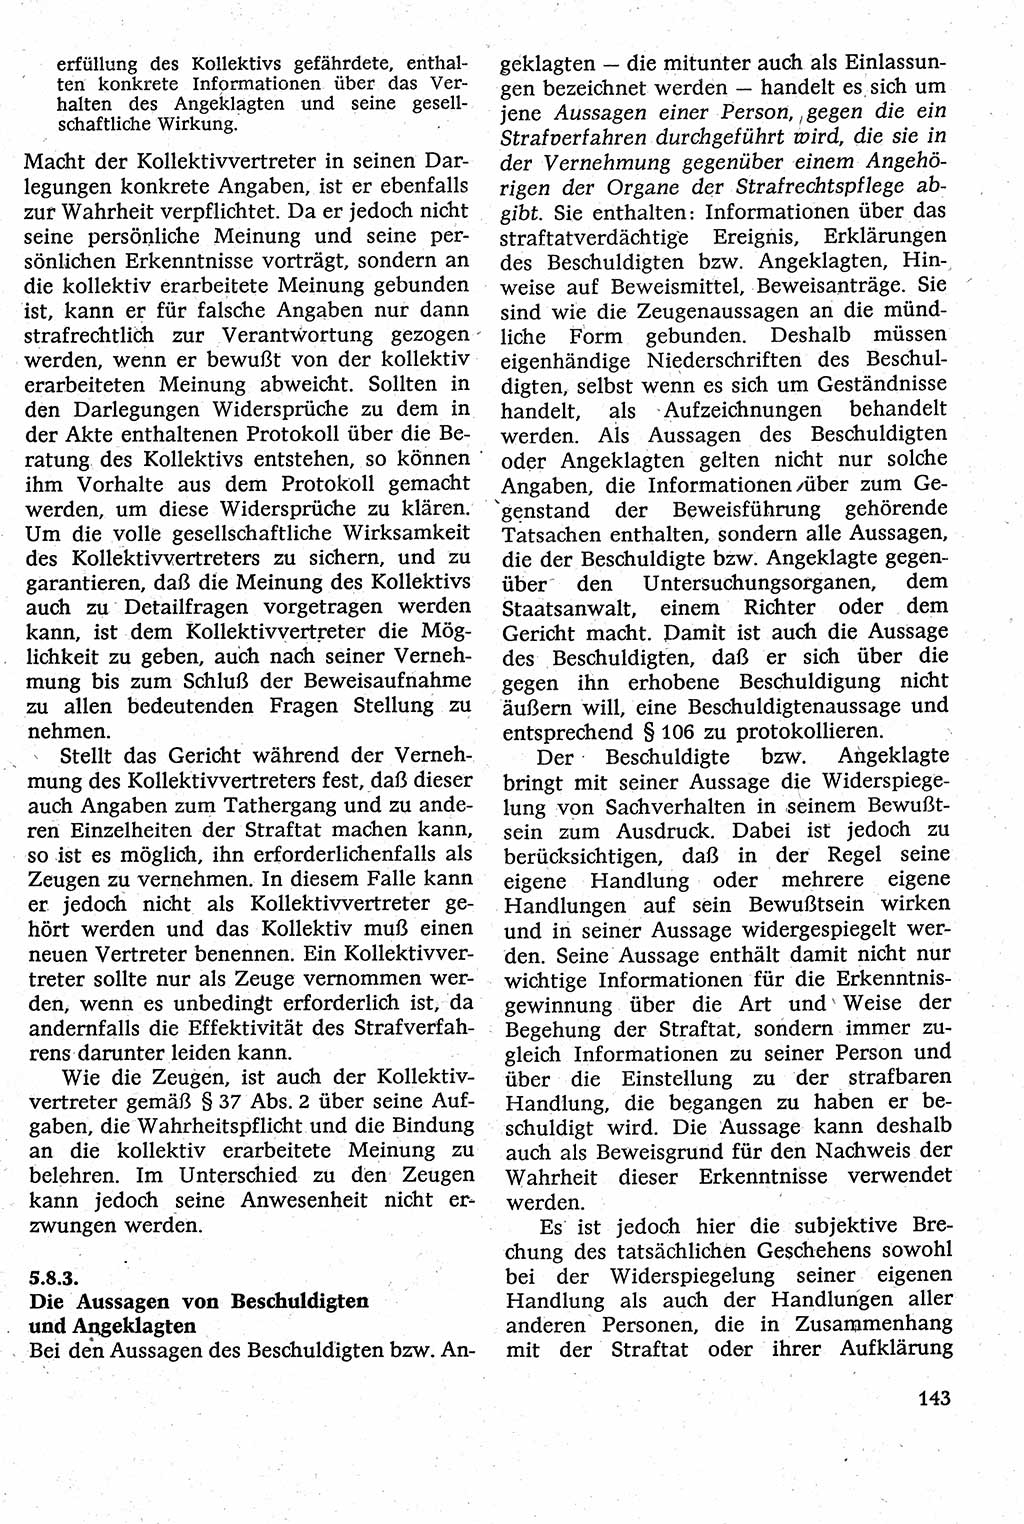 Strafverfahrensrecht [Deutsche Demokratische Republik (DDR)], Lehrbuch 1982, Seite 143 (Strafverf.-R. DDR Lb. 1982, S. 143)